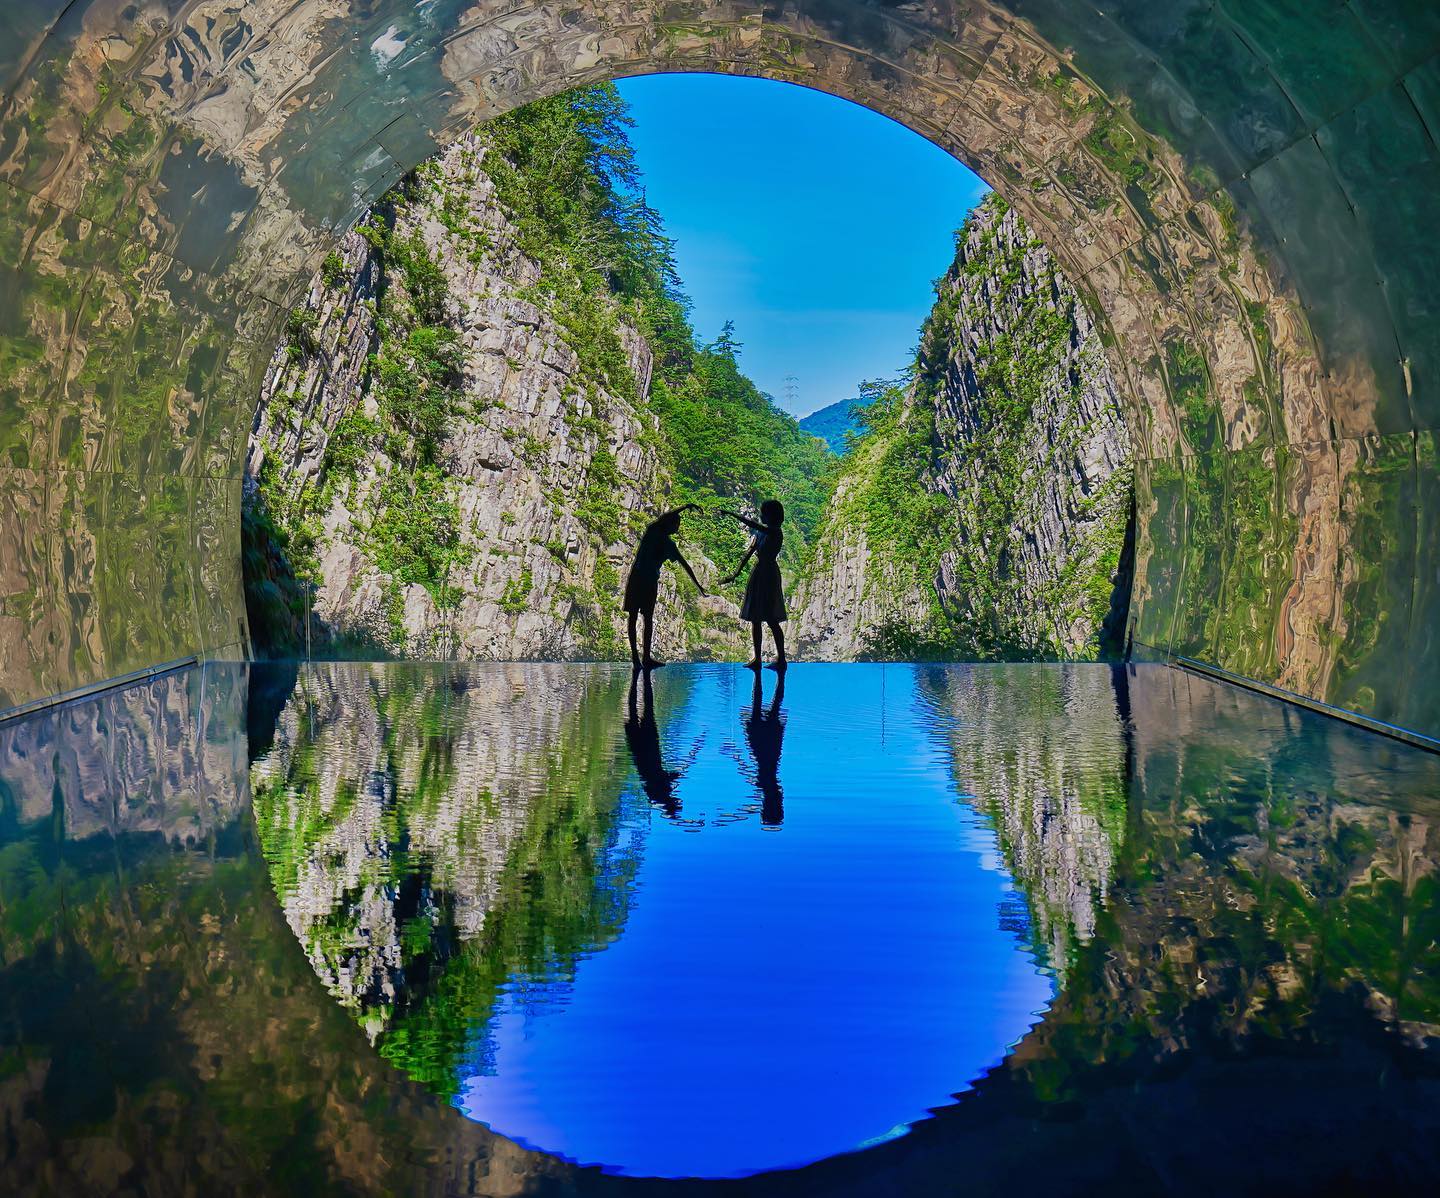 🇯🇵【新瀉 】清津峽
🪞隧道內的湧泉水鏡，讓峽谷隨四季變化的宏偉景觀完美反射，加上人影點綴，構成這幅著名絕景
👍 位於日本新潟縣十日町市的清津峽，是日本三大峽谷之一。全長750公尺的步行隧道-清津峽谷隧道”Tunnel of lights”，是上信越高原國立公園的一處名勝#niigata #新潟観光 #kiyotsugorge #清津峡 #清津峽 #把世界當教室🌍 #日本秋季絕景 #牽手照系列👫 #travelwithmikeanna